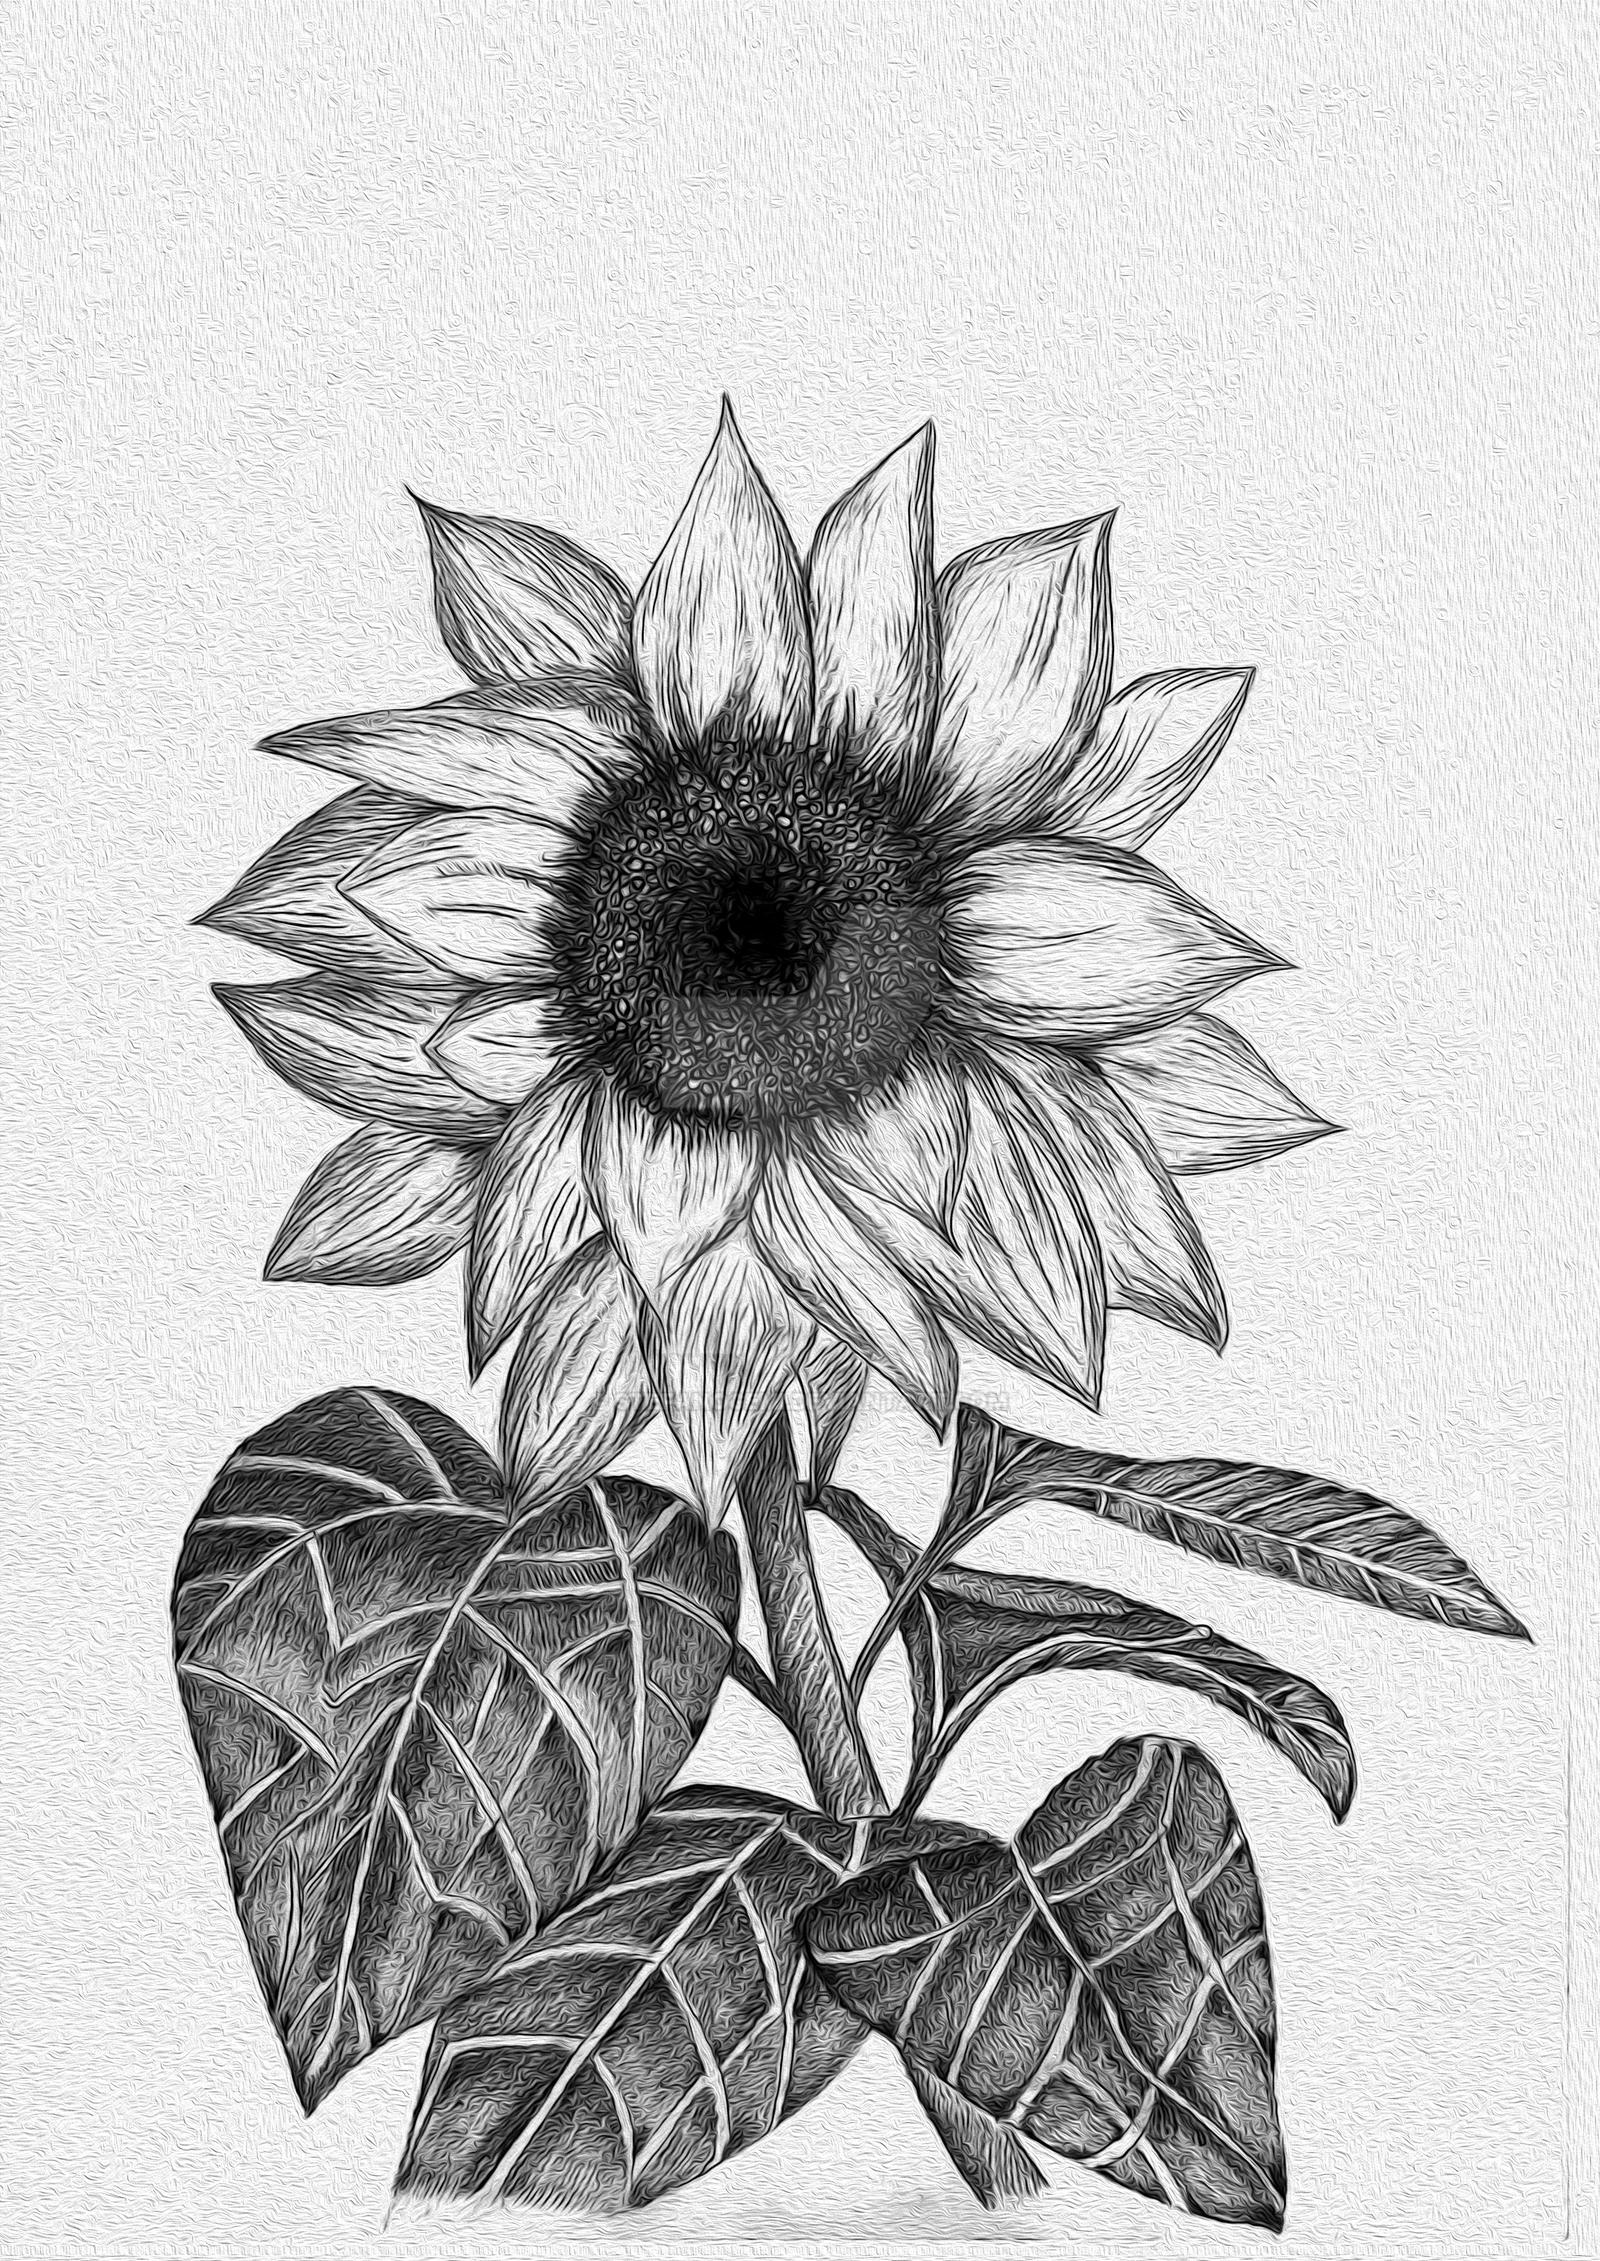 Sunflower (Sketch) by stefanogemi on DeviantArt